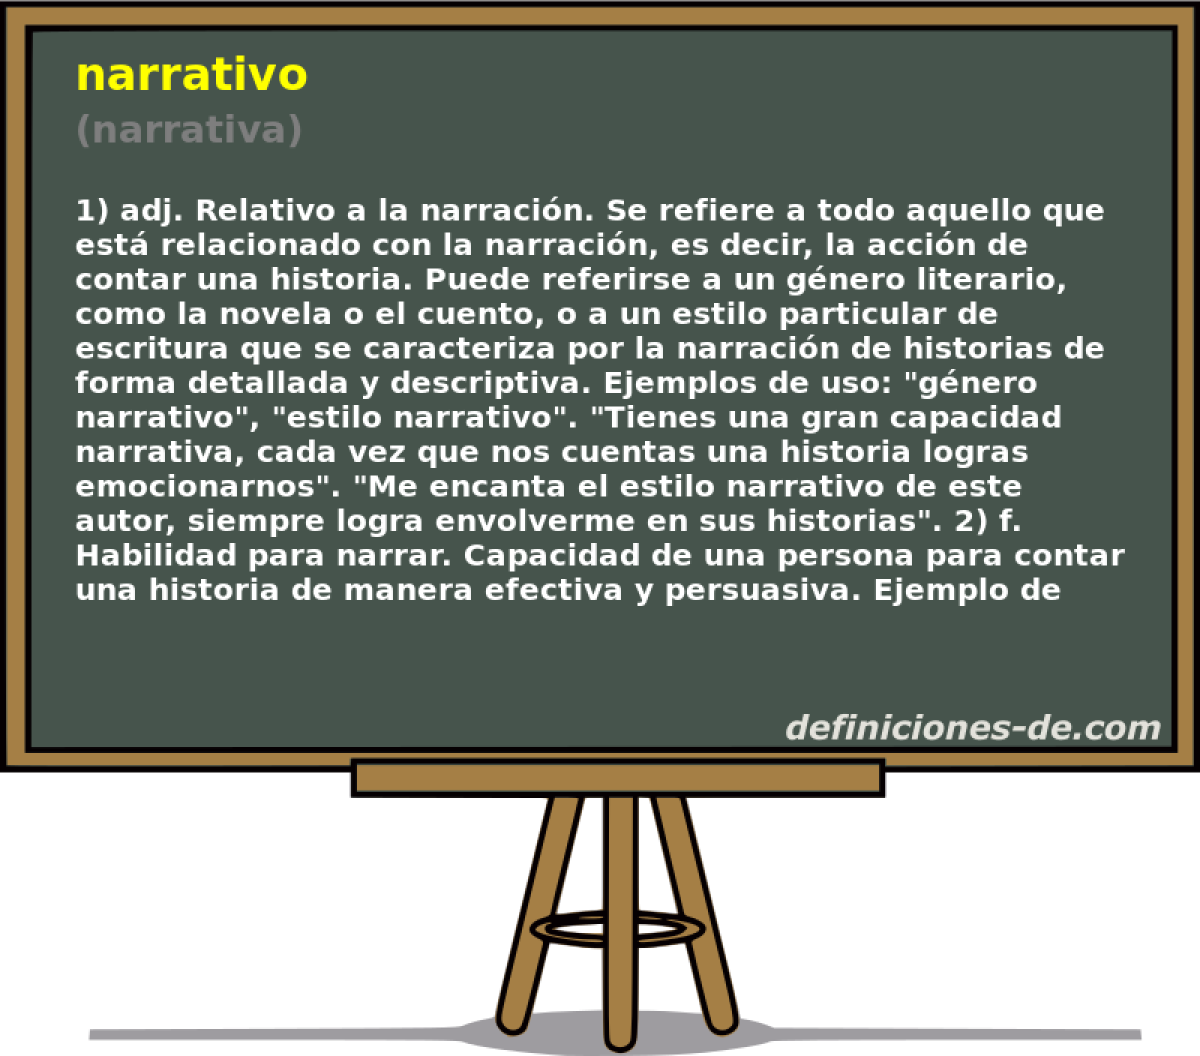 narrativo (narrativa)